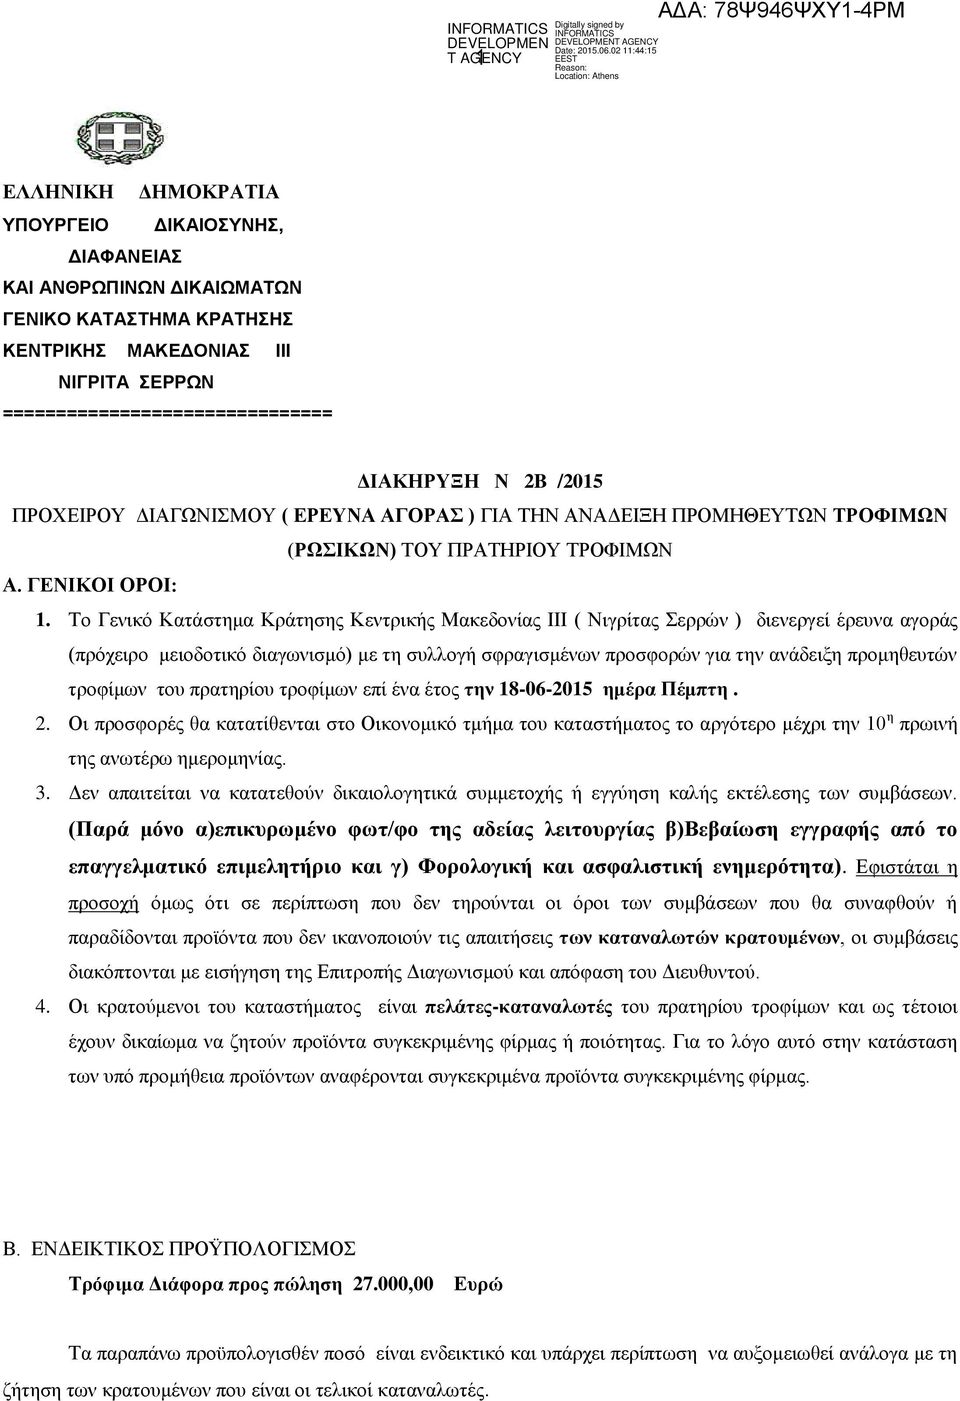 Το Γενικό Κατάστημα Κράτησης Κεντρικής Μακεδονίας ΙΙΙ ( Νιγρίτας Σερρών ) διενεργεί έρευνα αγοράς (πρόχειρο μειοδοτικό διαγωνισμό) με τη συλλογή σφραγισμένων προσφορών για την ανάδειξη προμηθευτών